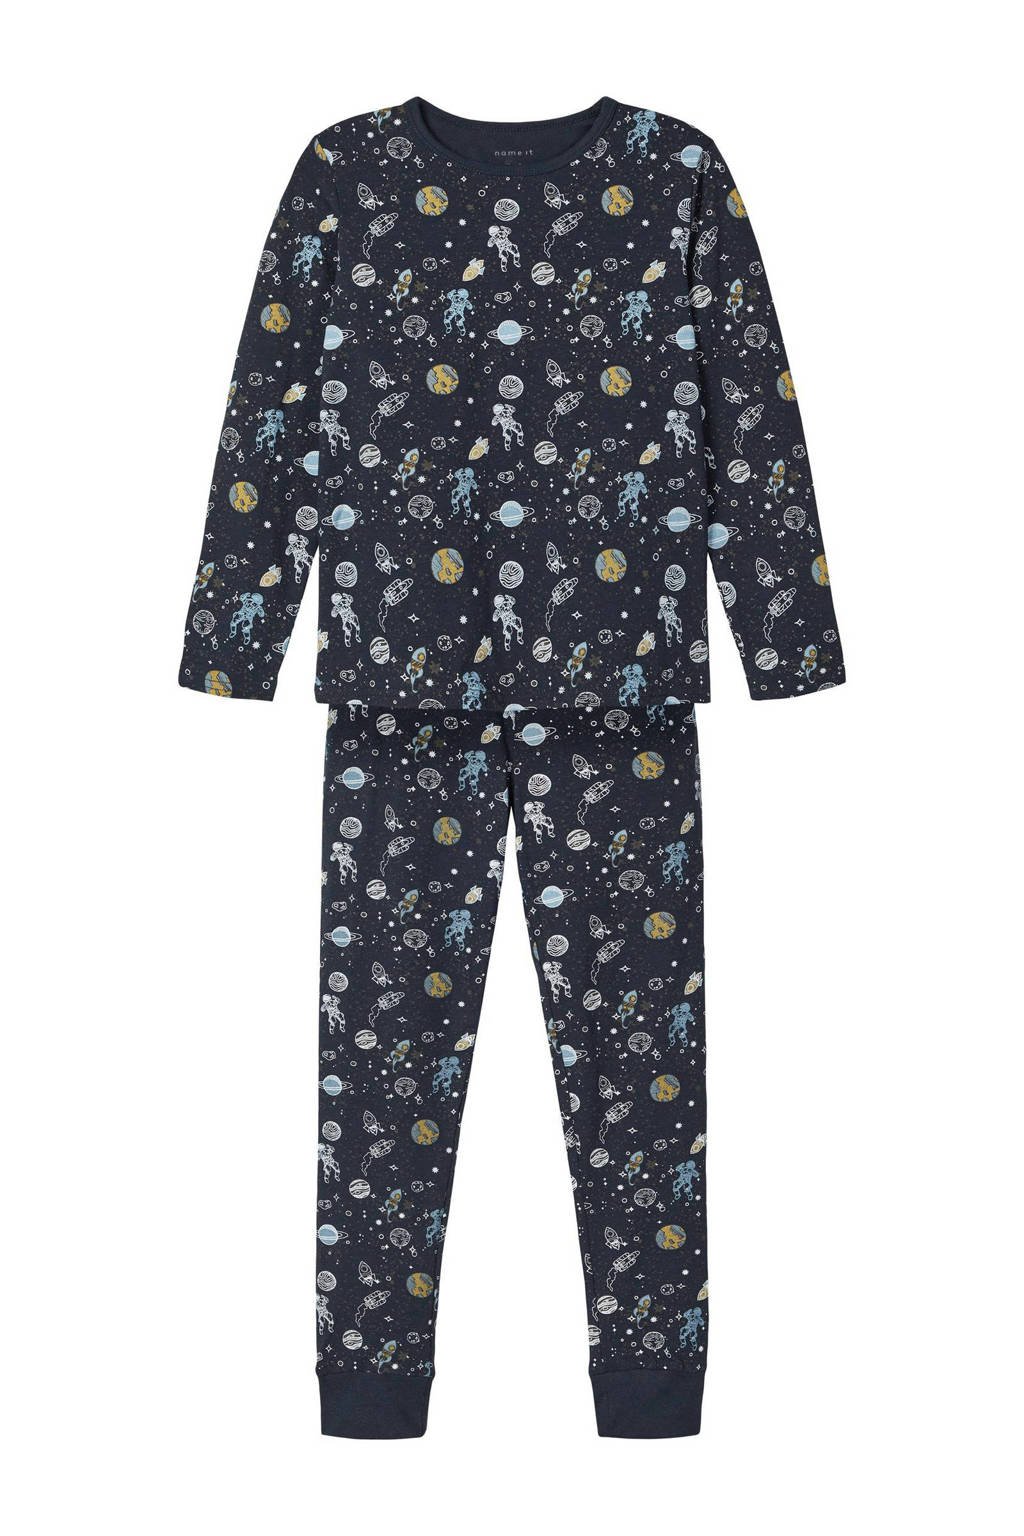 NAME IT KIDS   pyjama NKMNIGHTSET donkerblauw, Donkerblauw